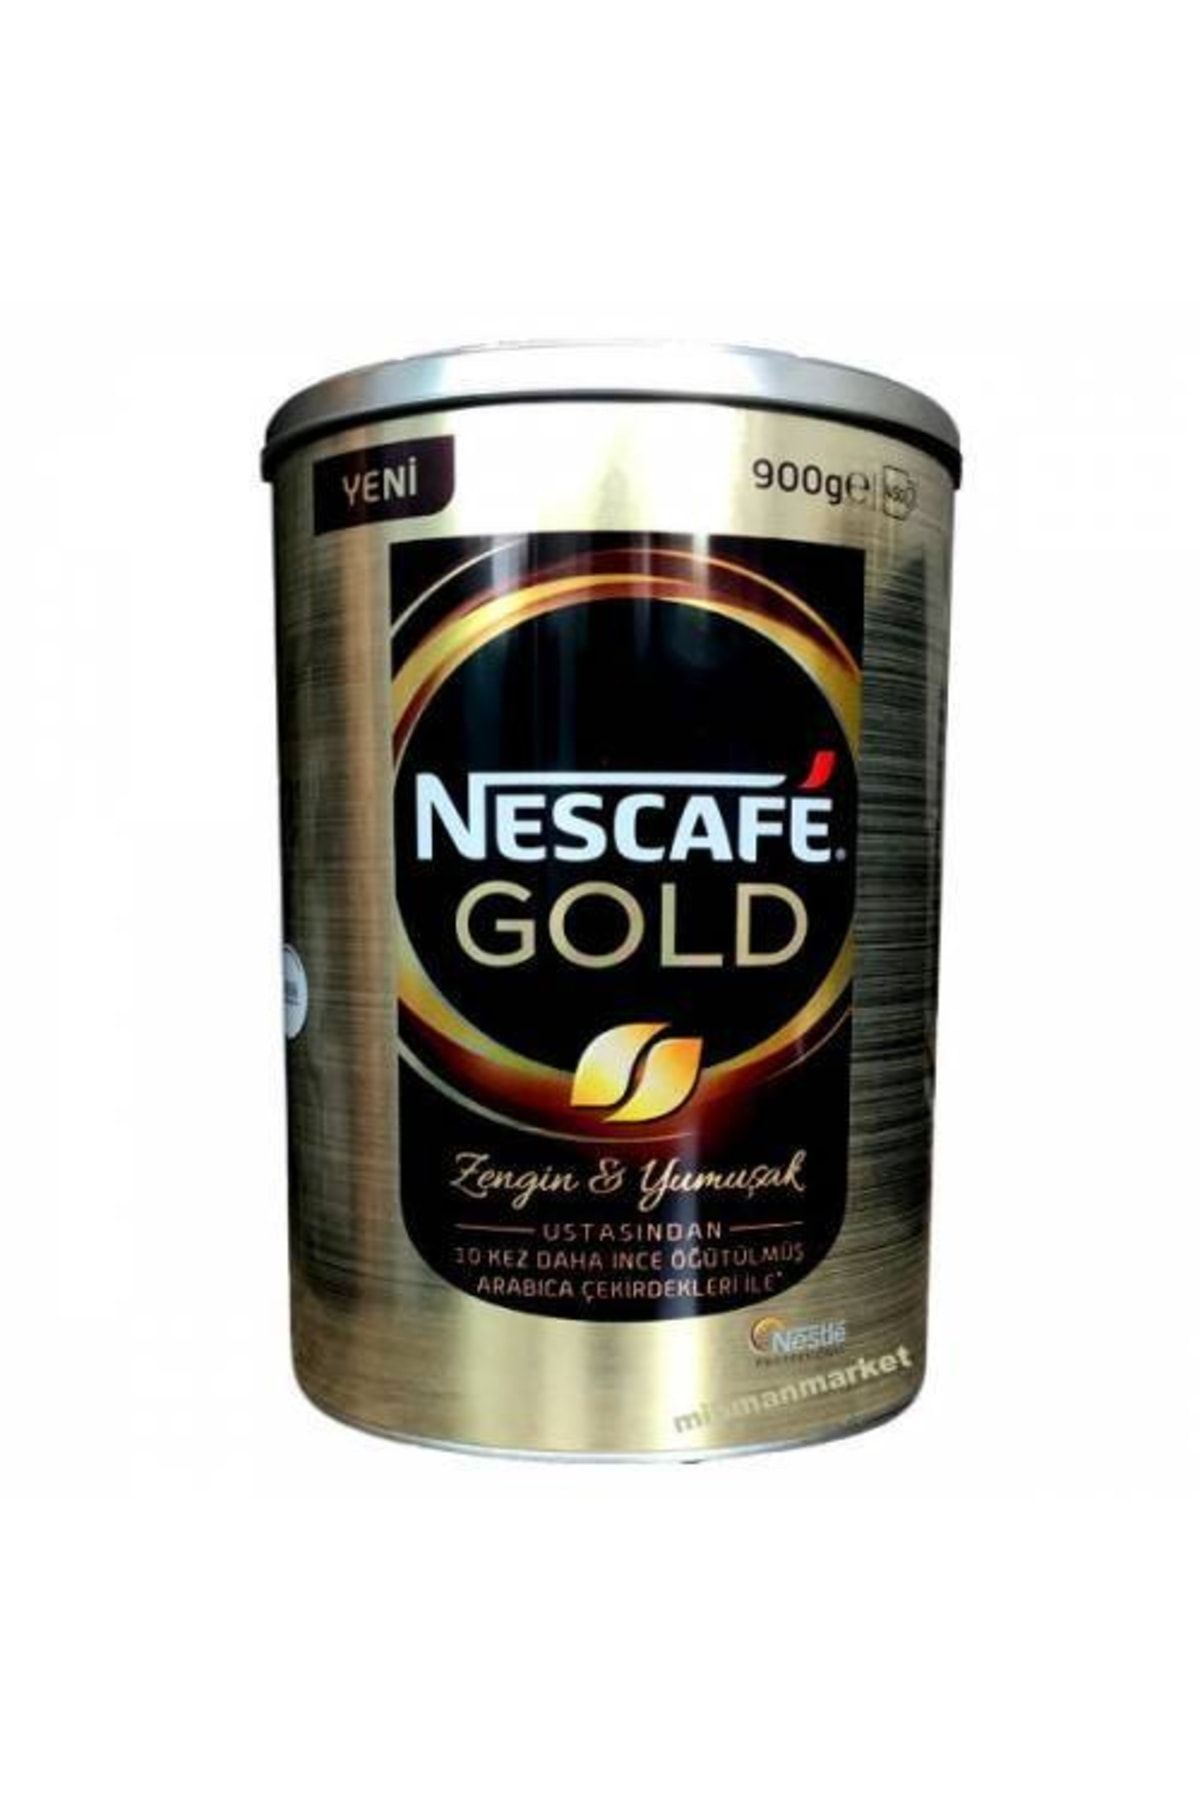 Кофе растворимый nescafe gold 900. Кофе Нескафе Голд 900 гр. Нестле Голд кофе. Кофе Nescafe 900 грамм. Нескафе Голд Нестле Профешнл 900 гр.